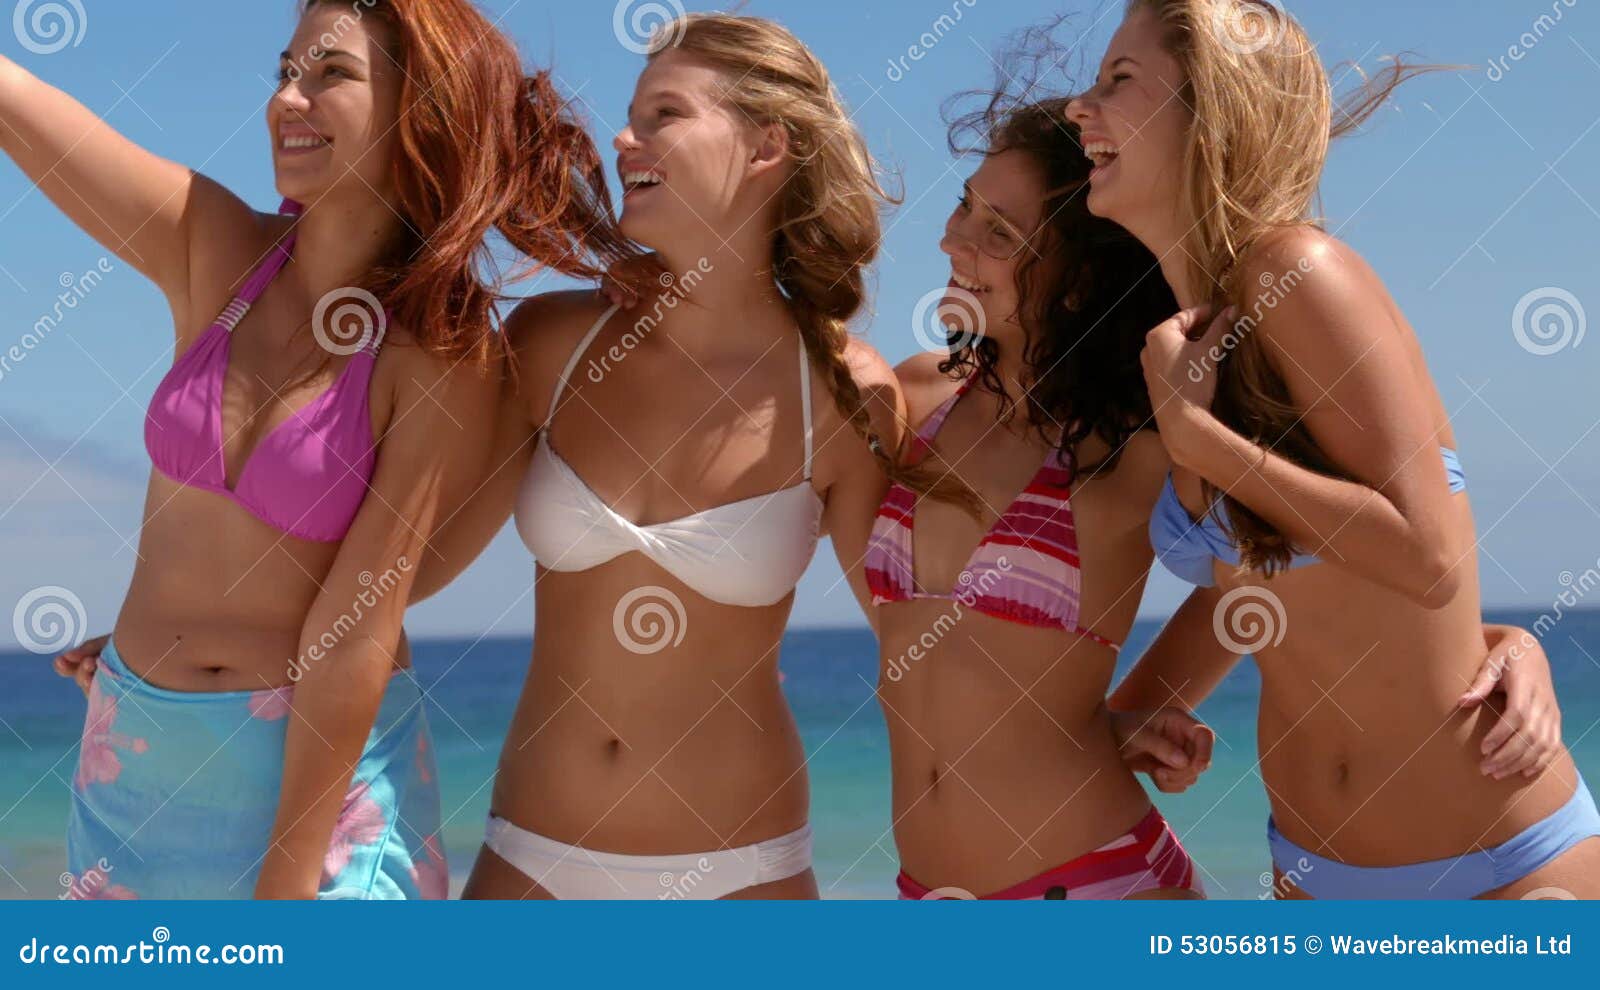 sexy women beach selfie